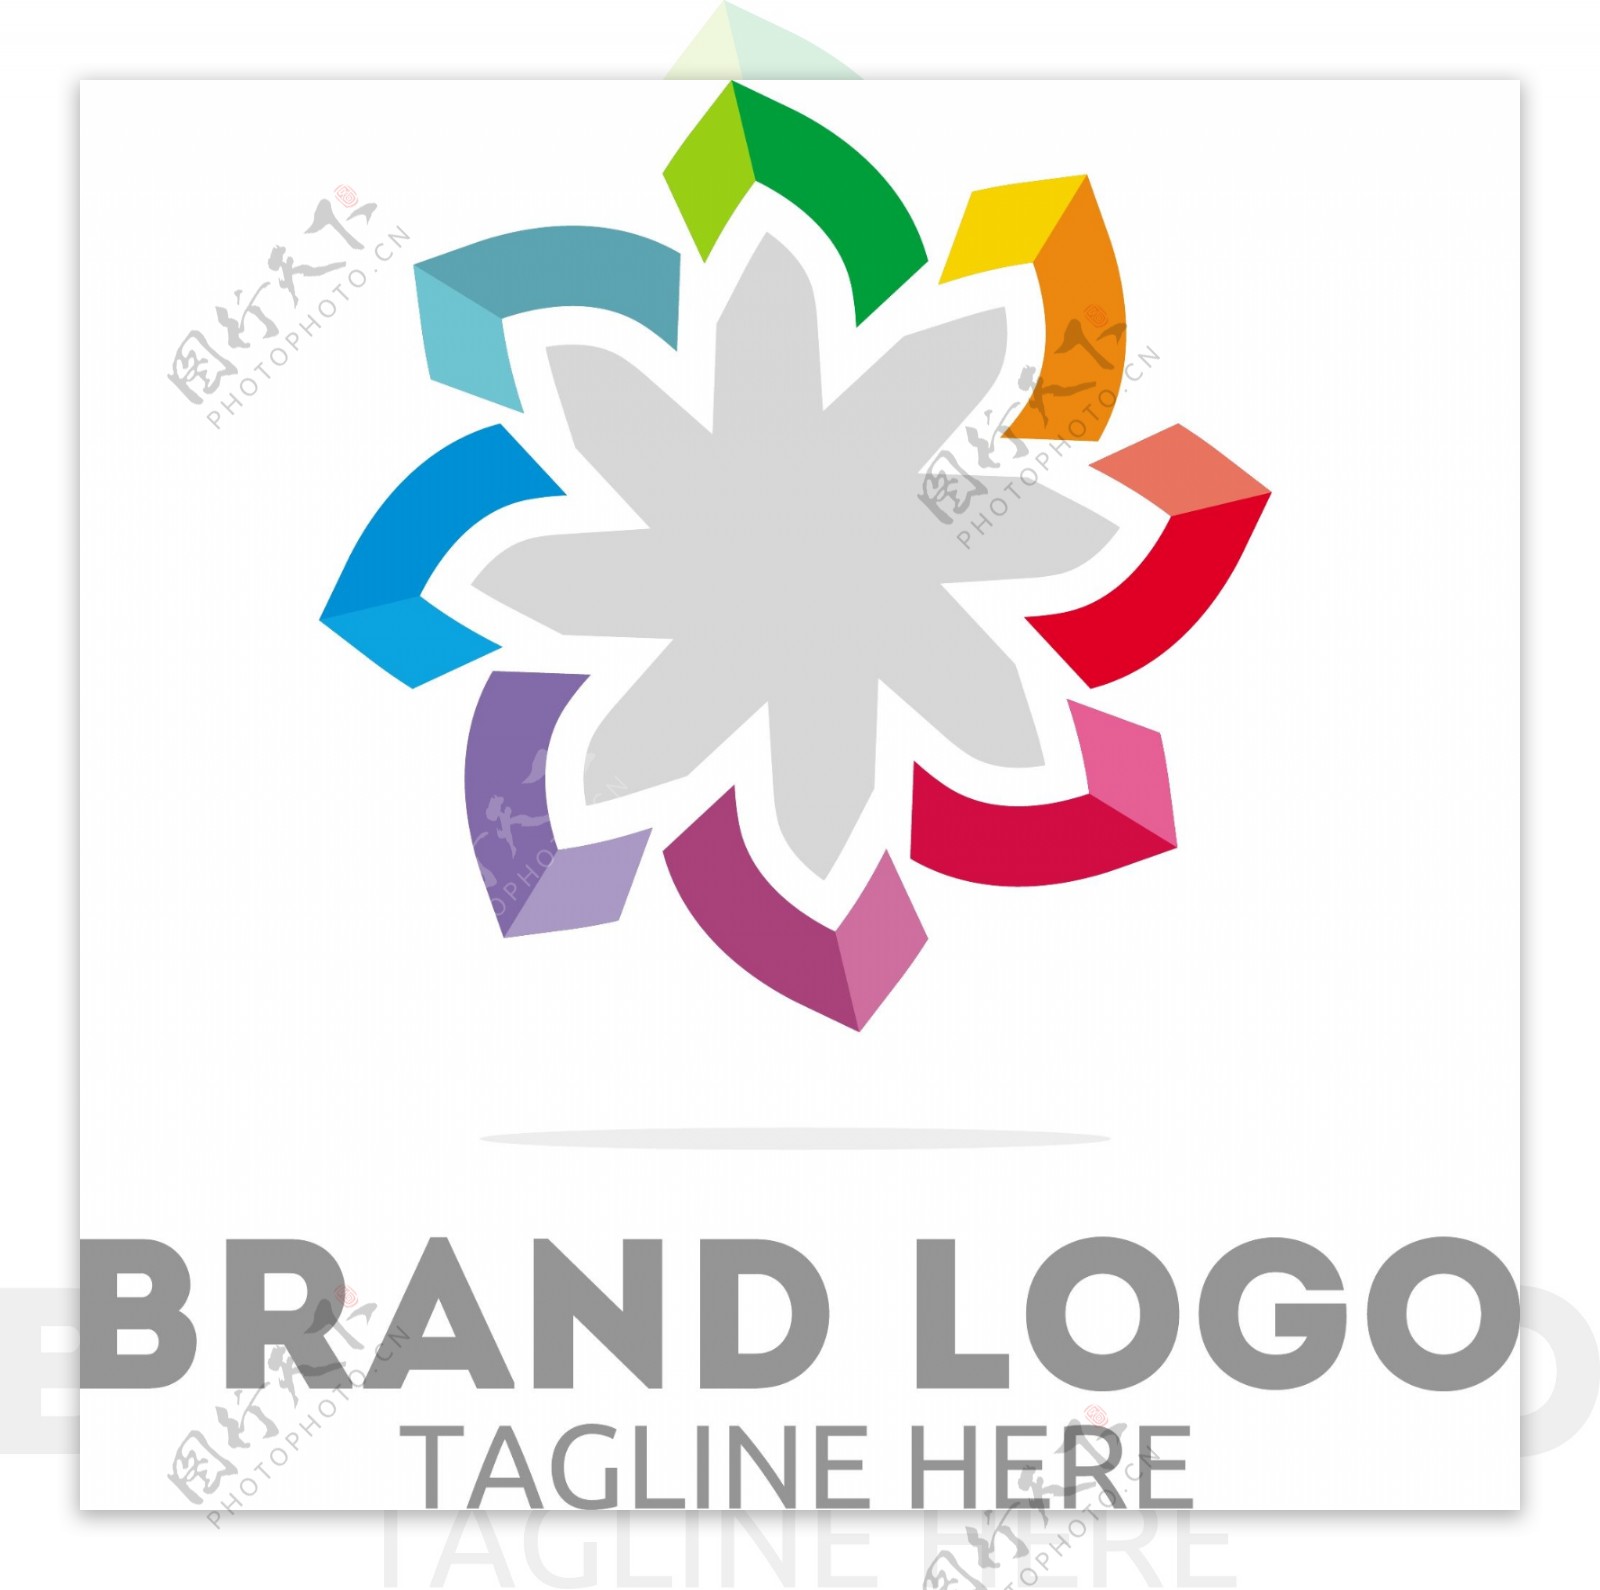 花瓣形状logo标志